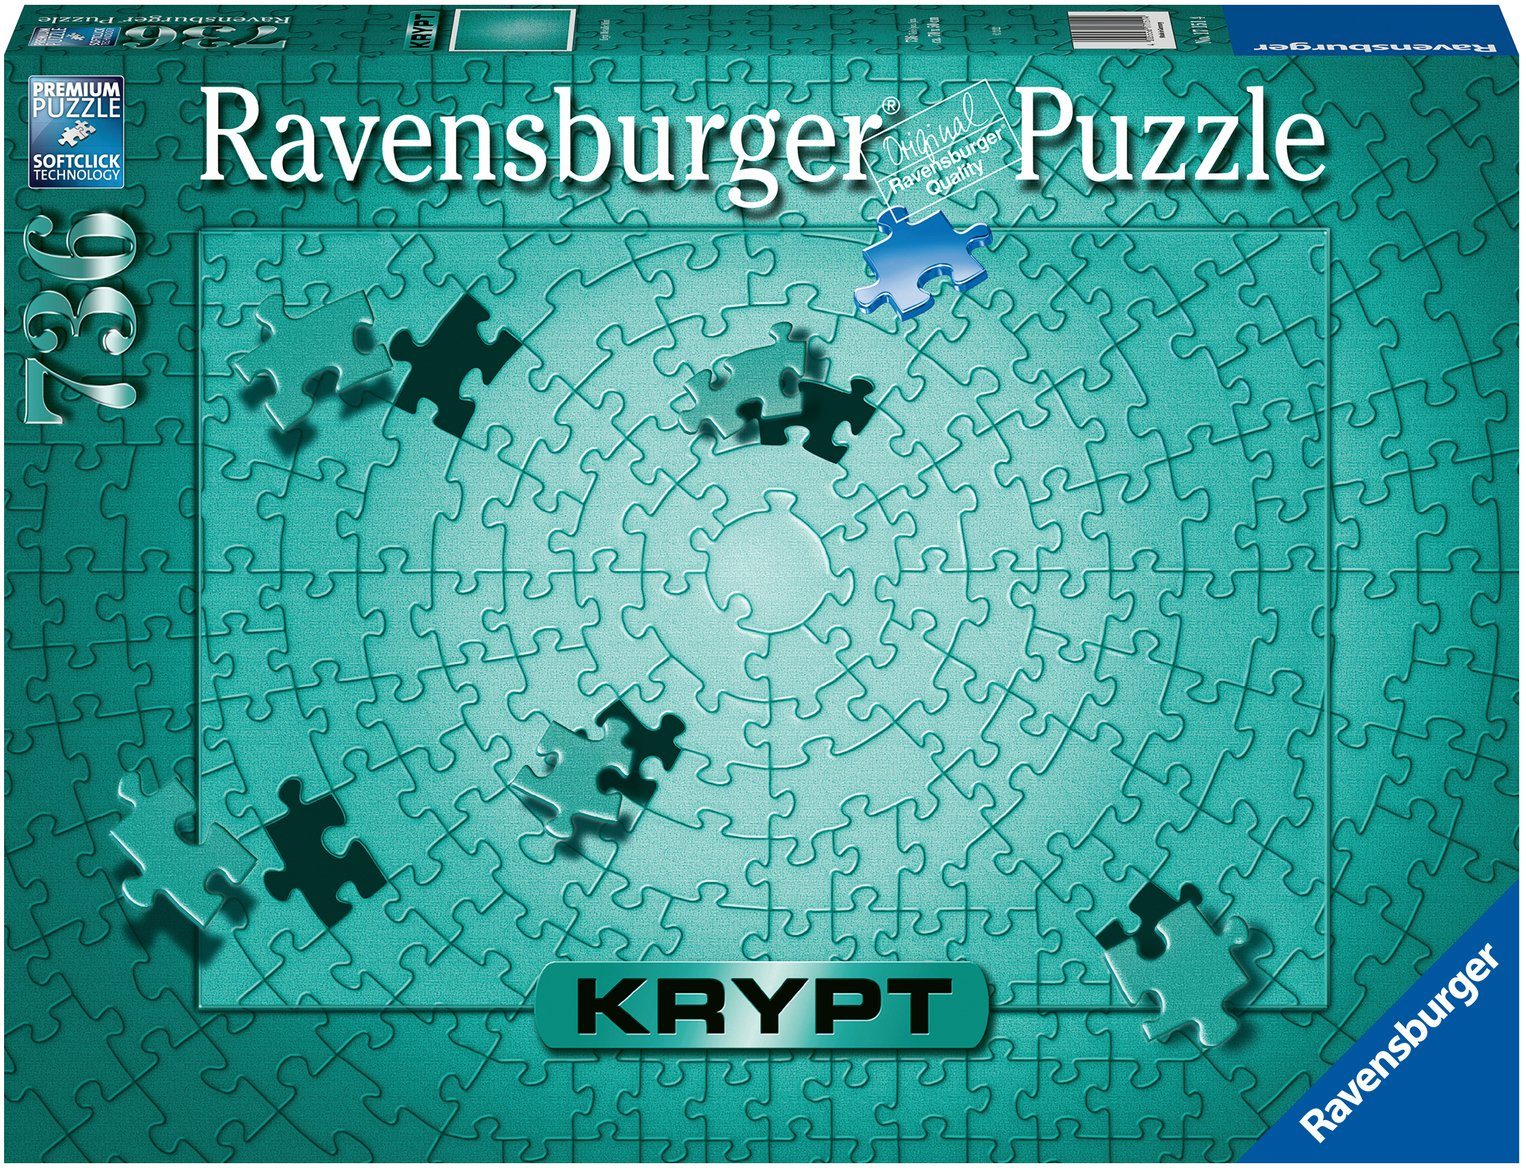 Ravensburger Puzzle Krypt Metallic Mint, Germany, Puzzleteile, Wald in - FSC® - schützt weltweit 736 Made